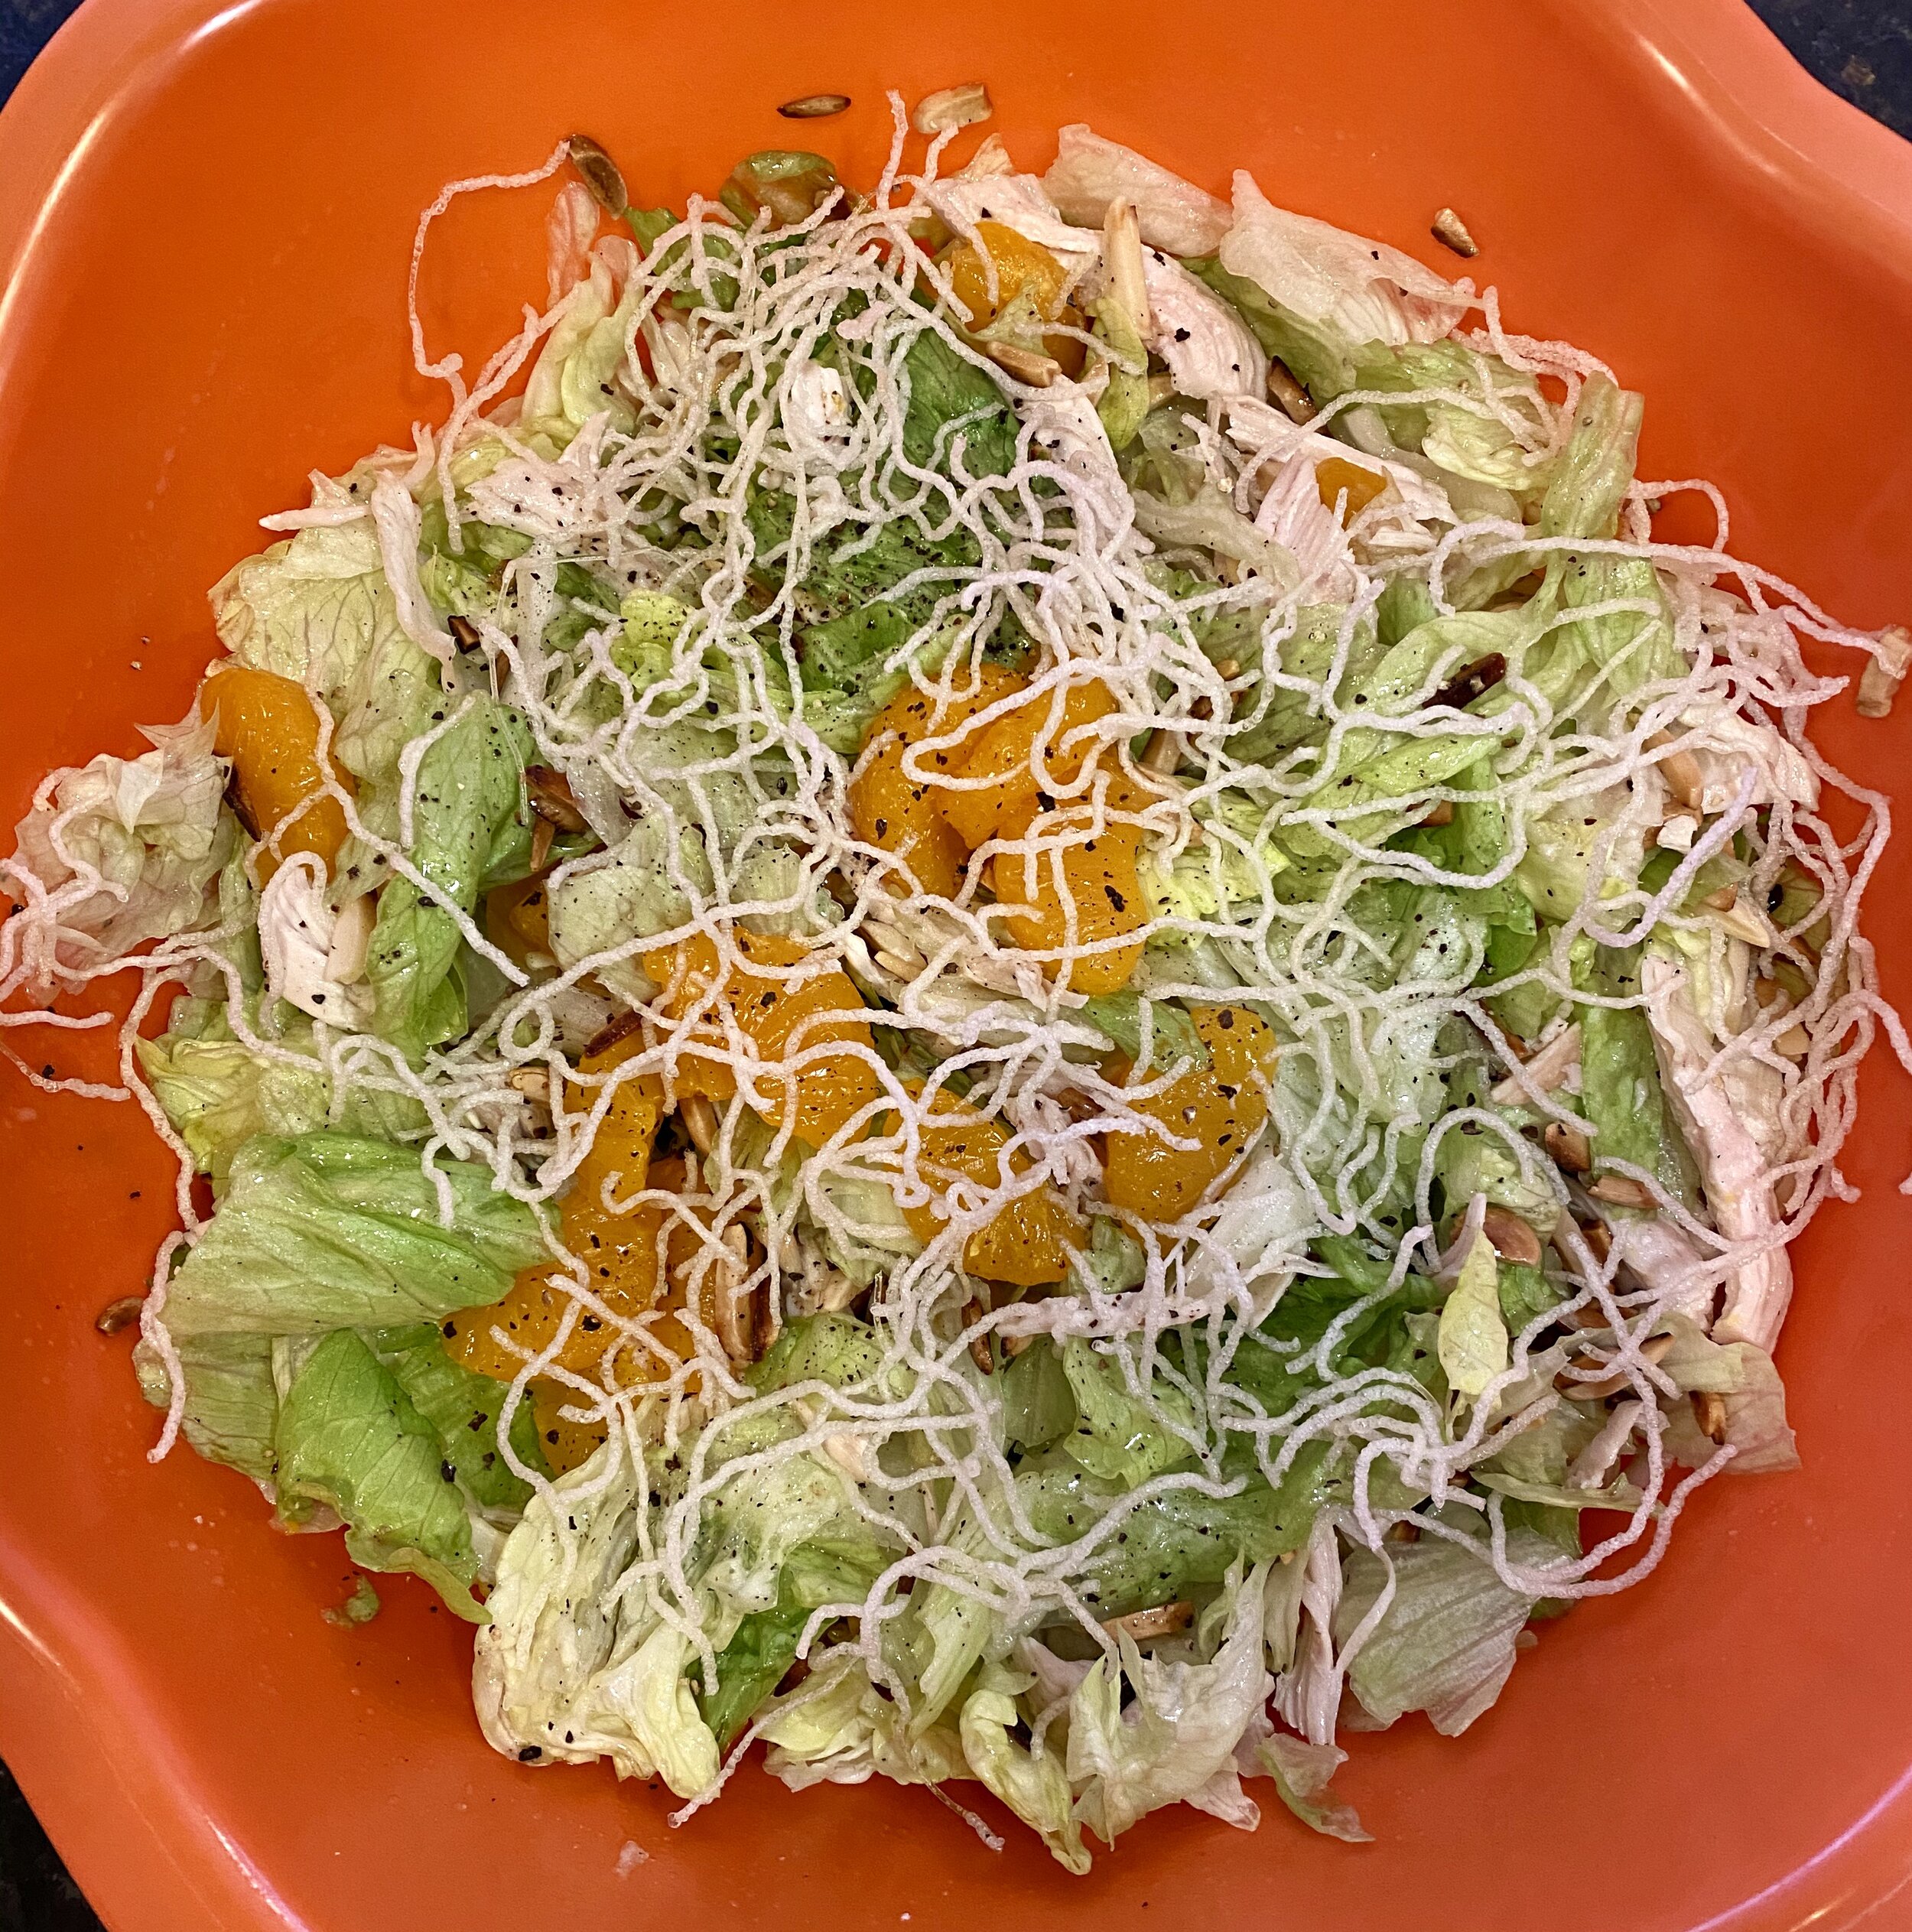 Auntie Sue's Chinese Chicken Salad